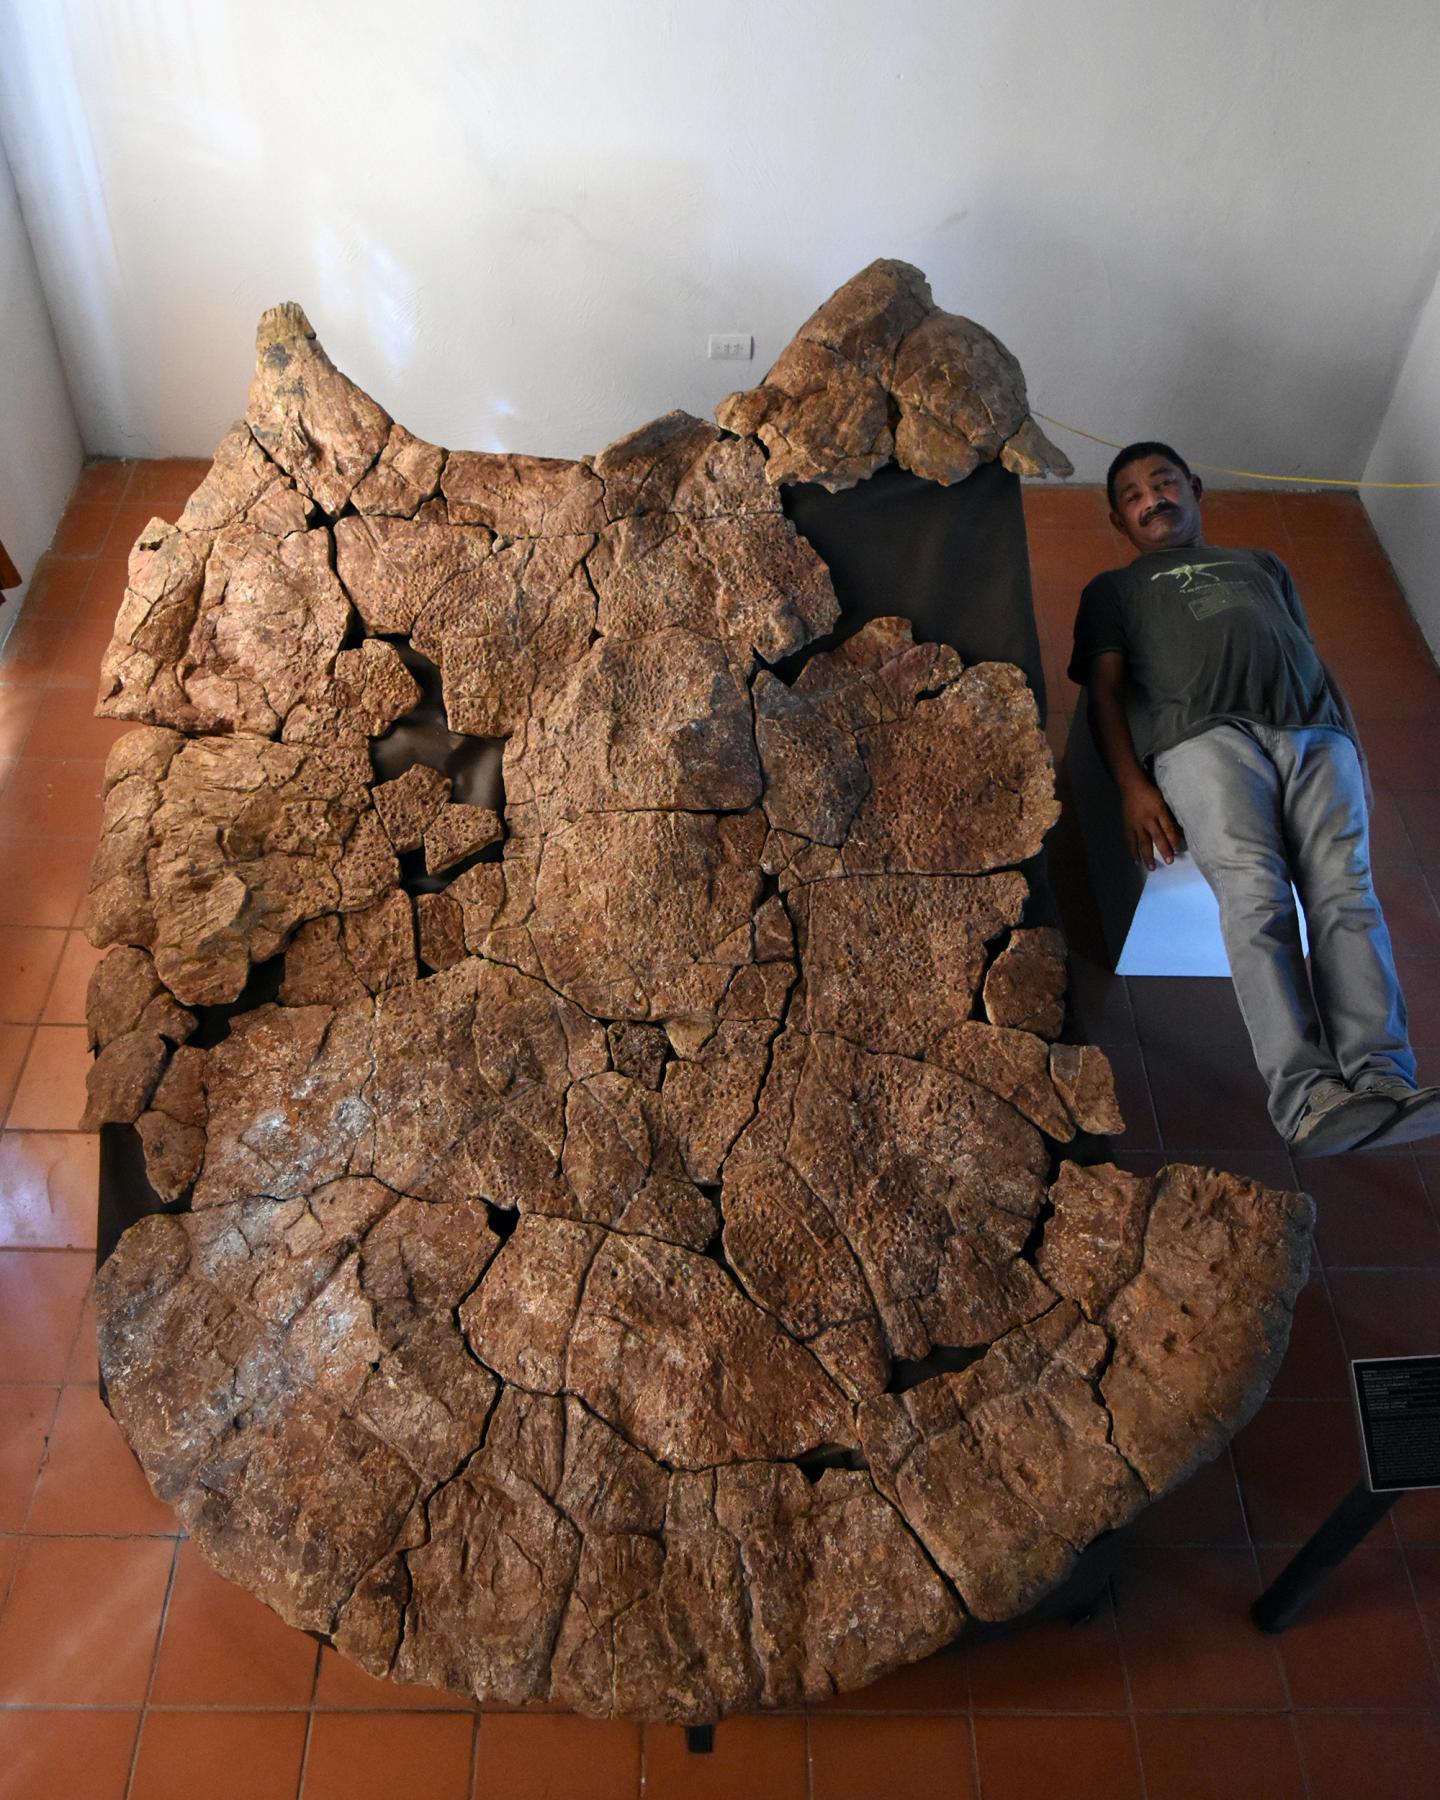 Палеонтолог Родольфо Санчес і панцир самця гігантської черепахи Stupendemys geographicus з Венесуели, виявлений в родовищах віком 8 мільйонів років. Credit: Edwin Cadena